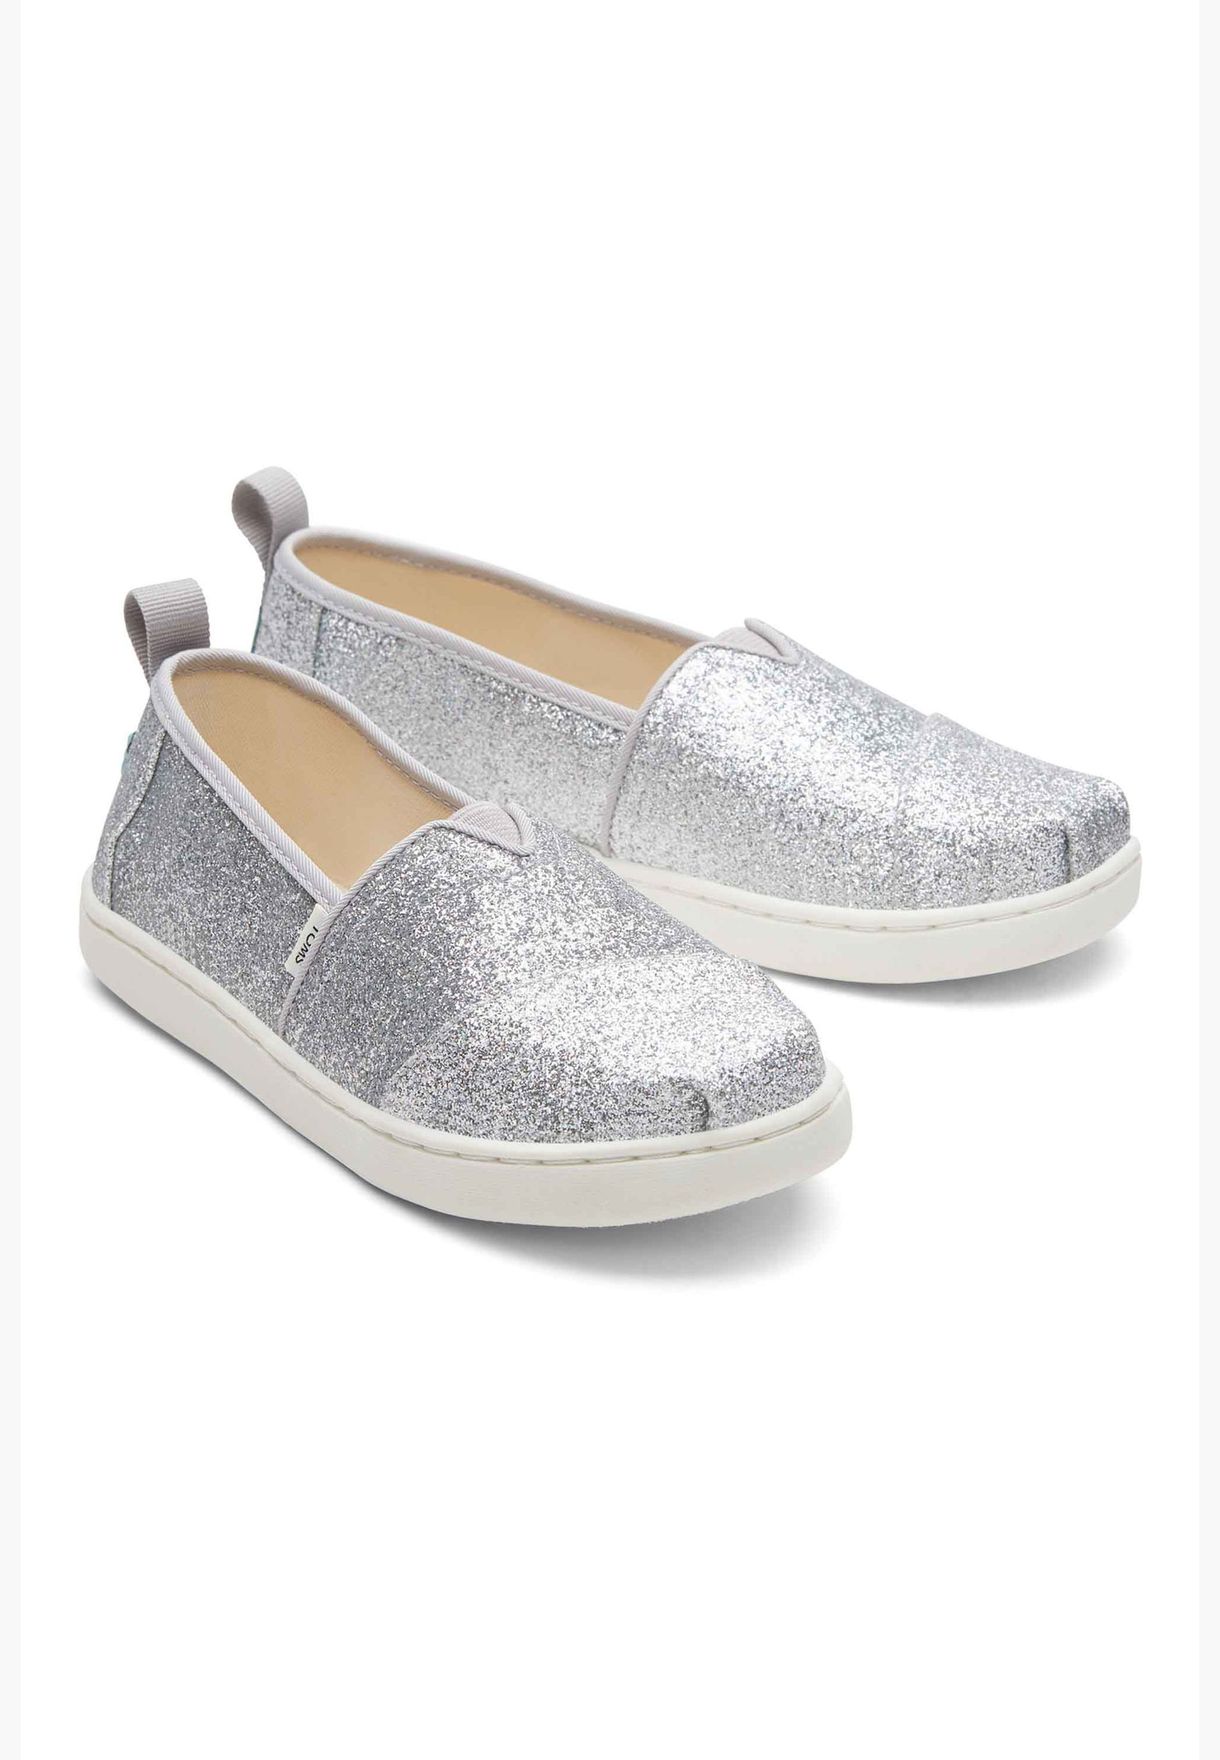 Toms Girl's Alpargata Shoes, 10017760, Silver, 36 EU